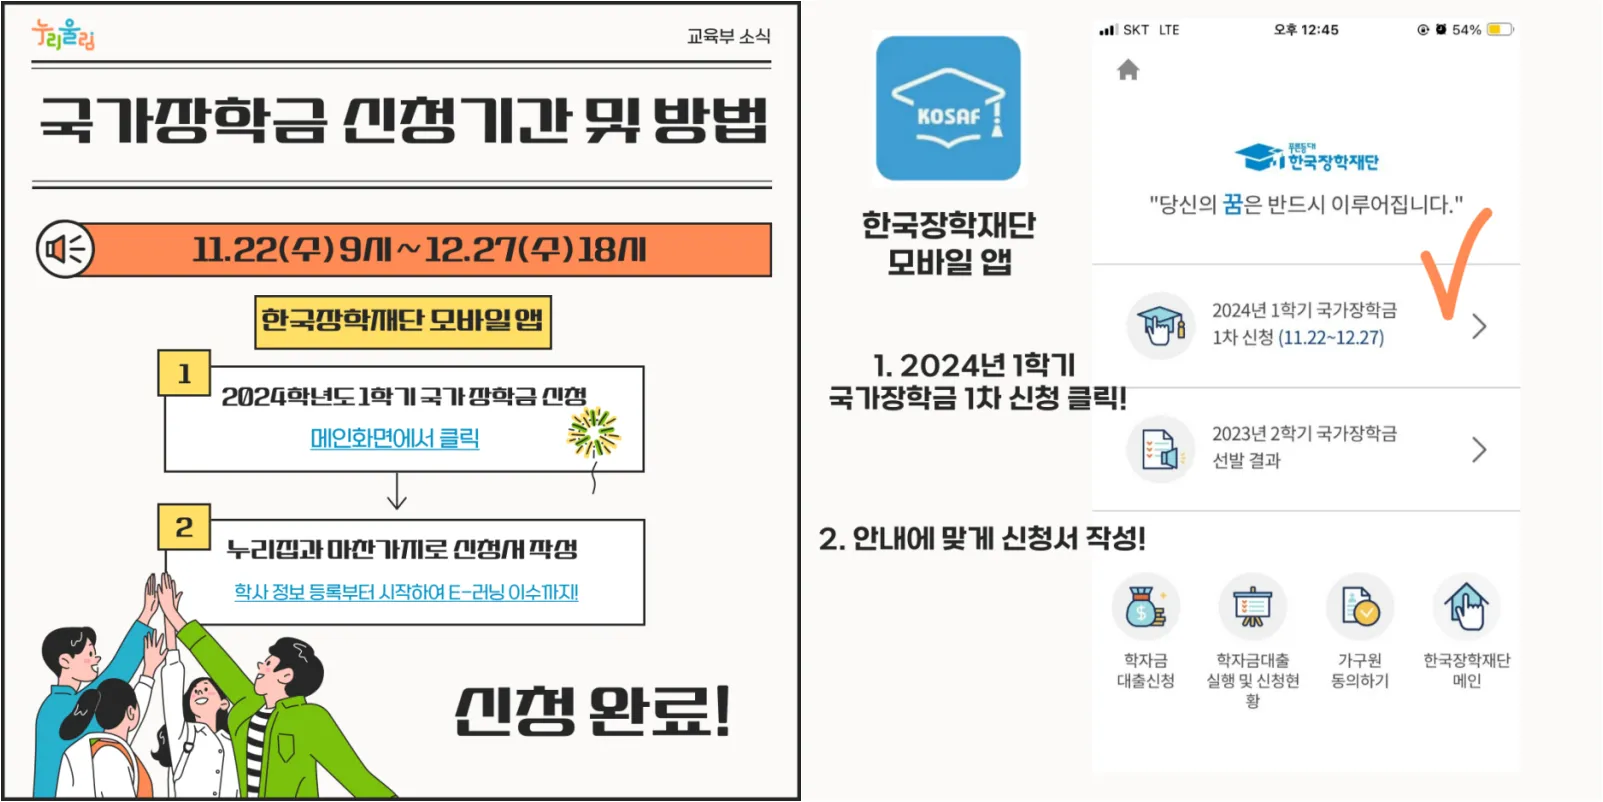 한국장학재단 모바일 앱으로 신청하기